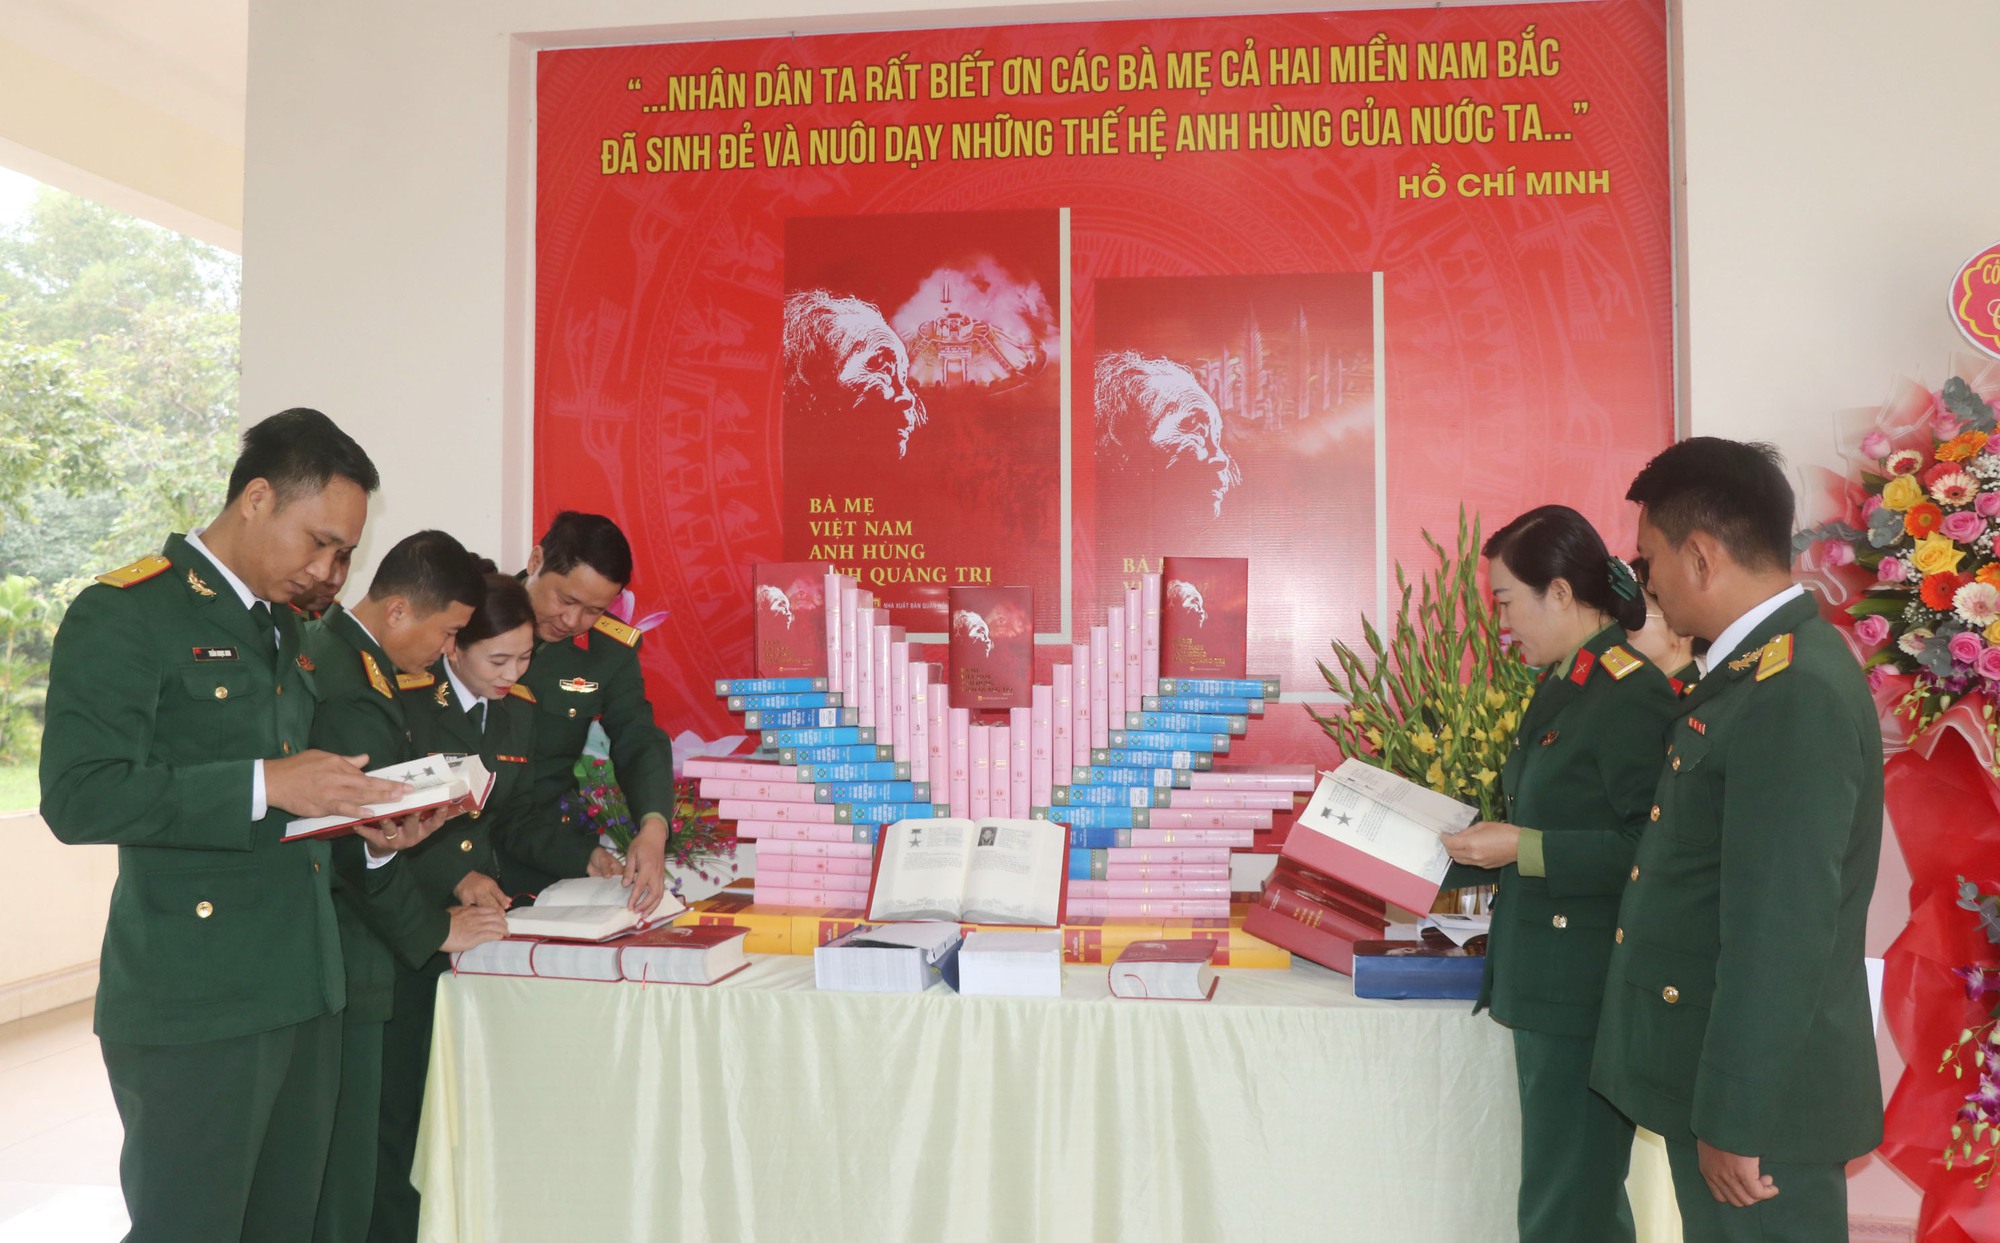 Quảng Trị in sách về cuộc đời của 2.833 Mẹ Việt Nam anh hùng - Ảnh 2.